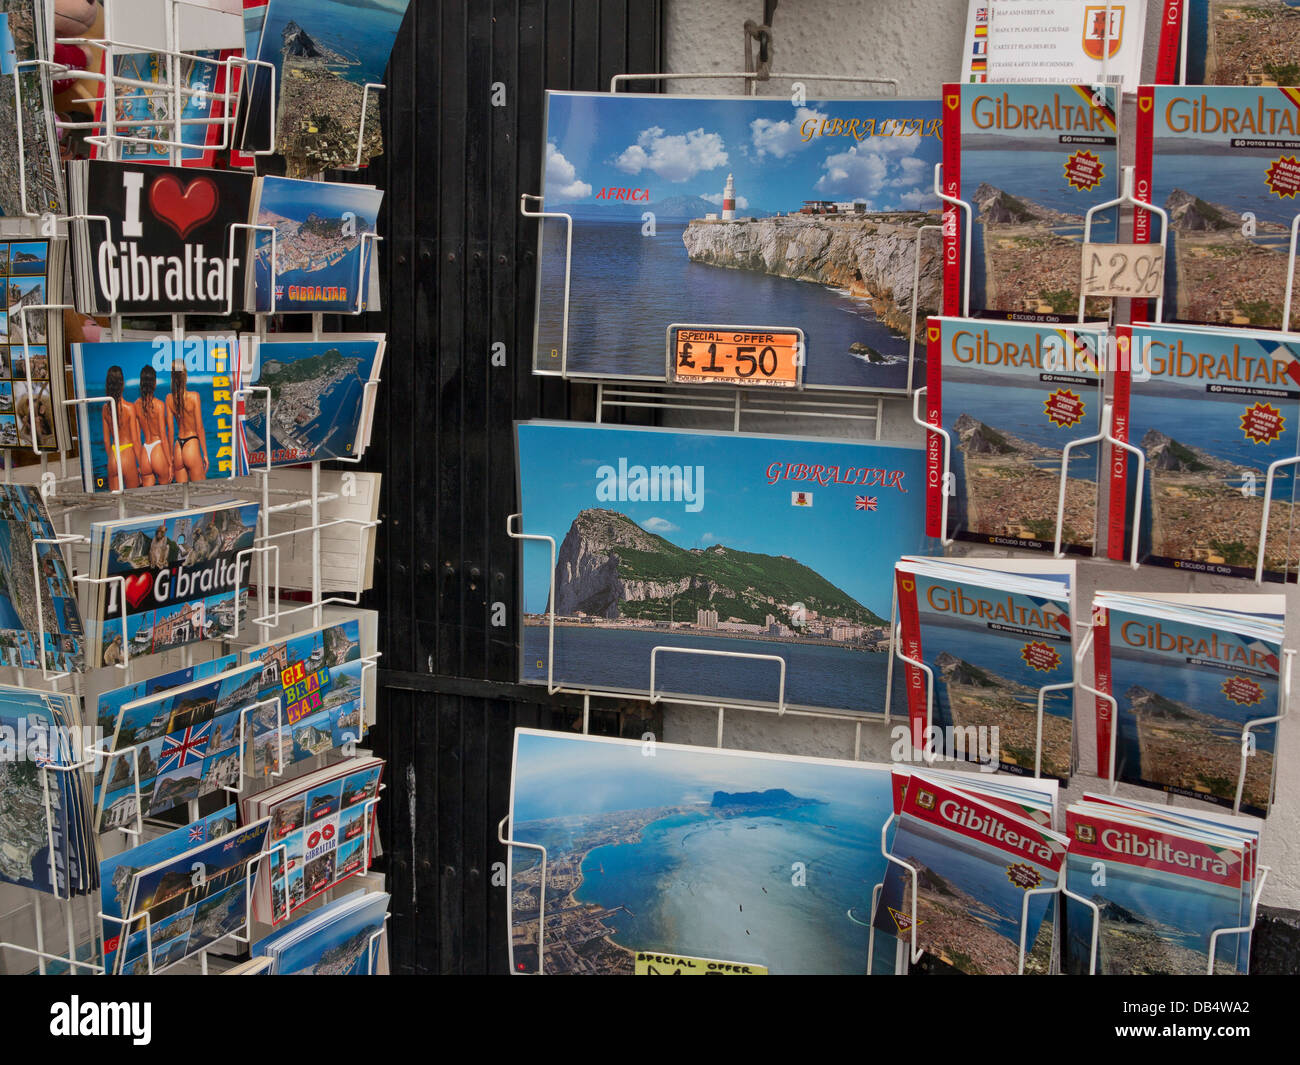 Souvenir and postcard shop in Gibraltar Stock Photo